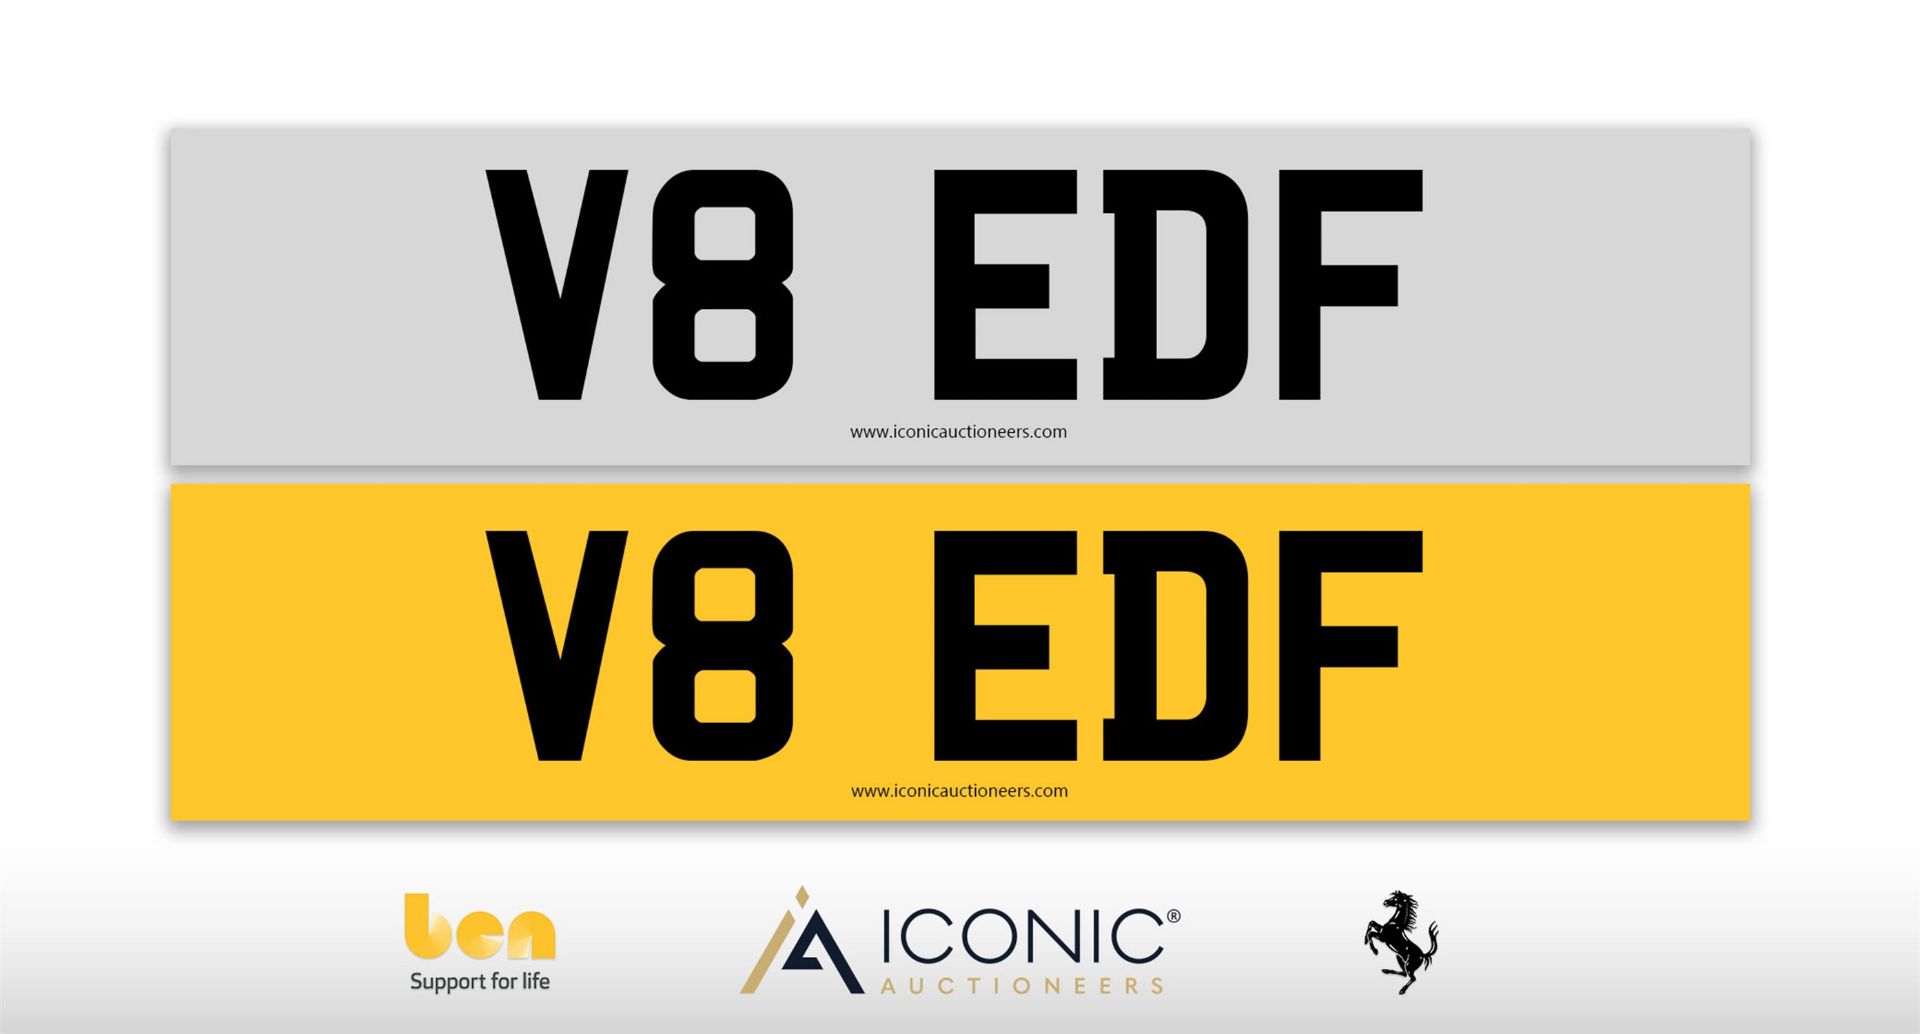 Registration Number V8 EDF